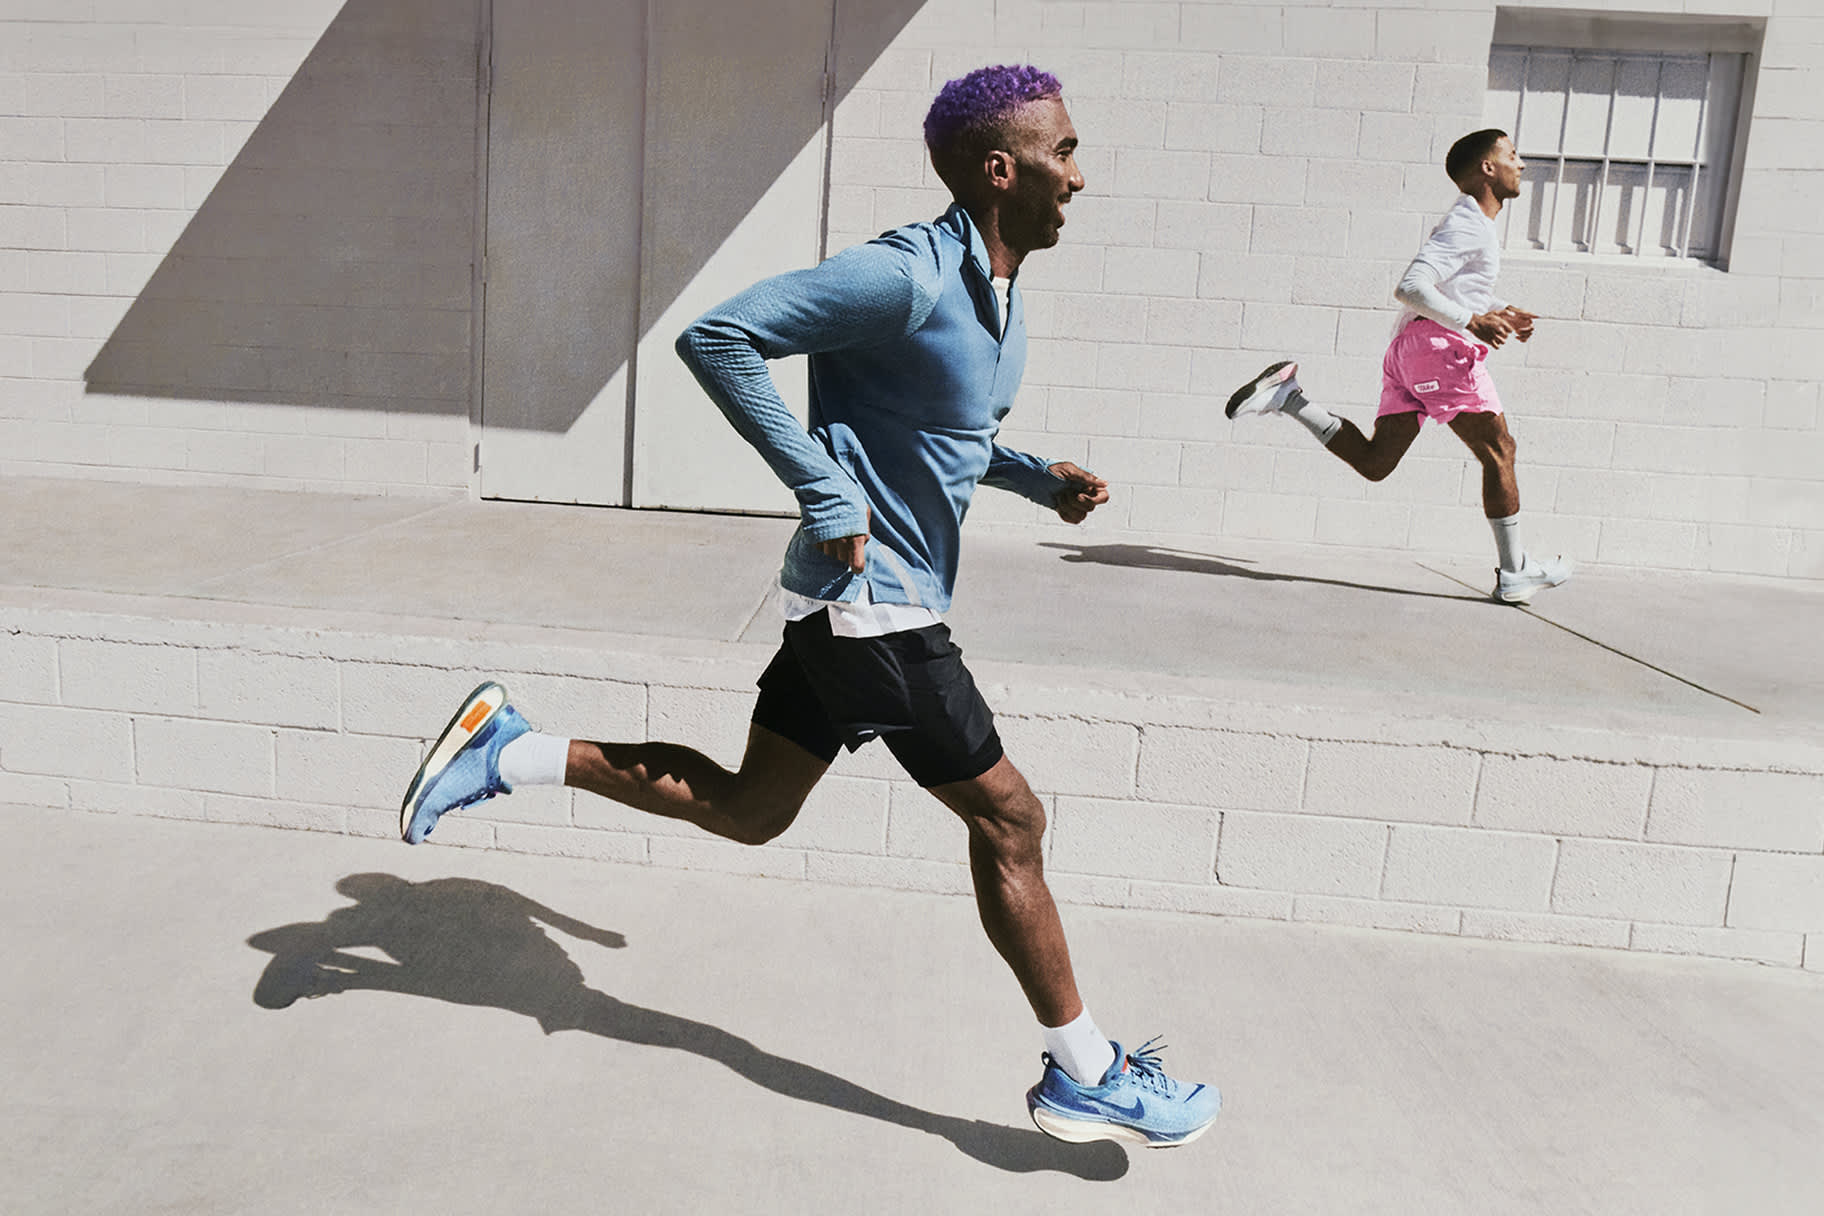 So findest du laut Nike Coaches die richtige Pace beim Laufen